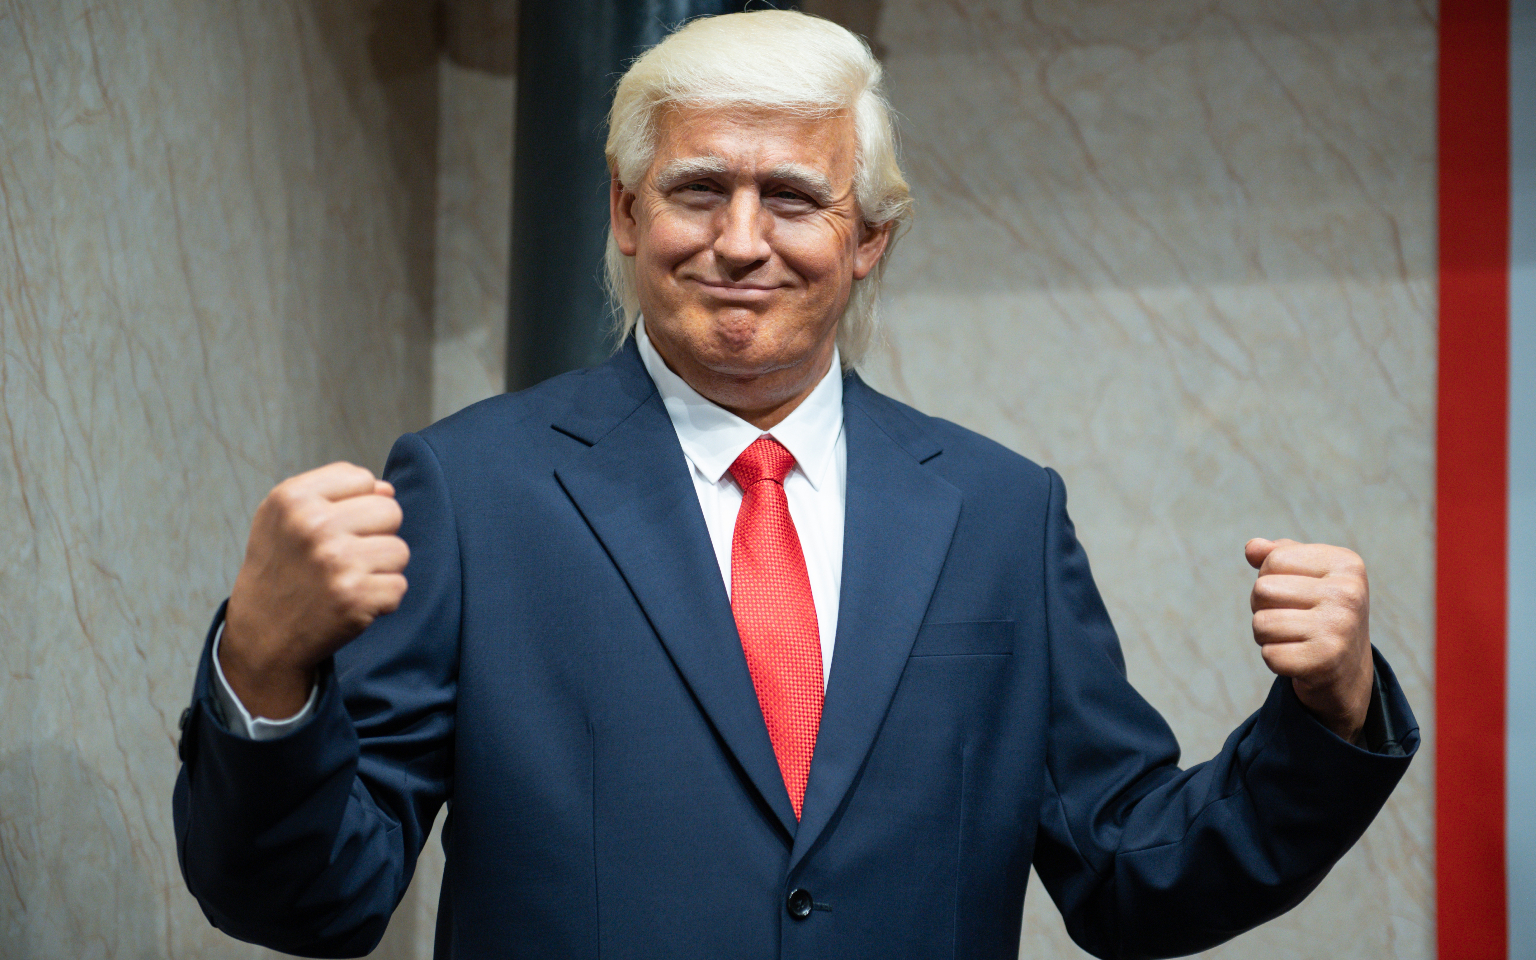 Восковая фигура 45-го президента США Дональда Трампа в музее восковых фигур &laquo;Дежавю&raquo; в Сочи
&nbsp;